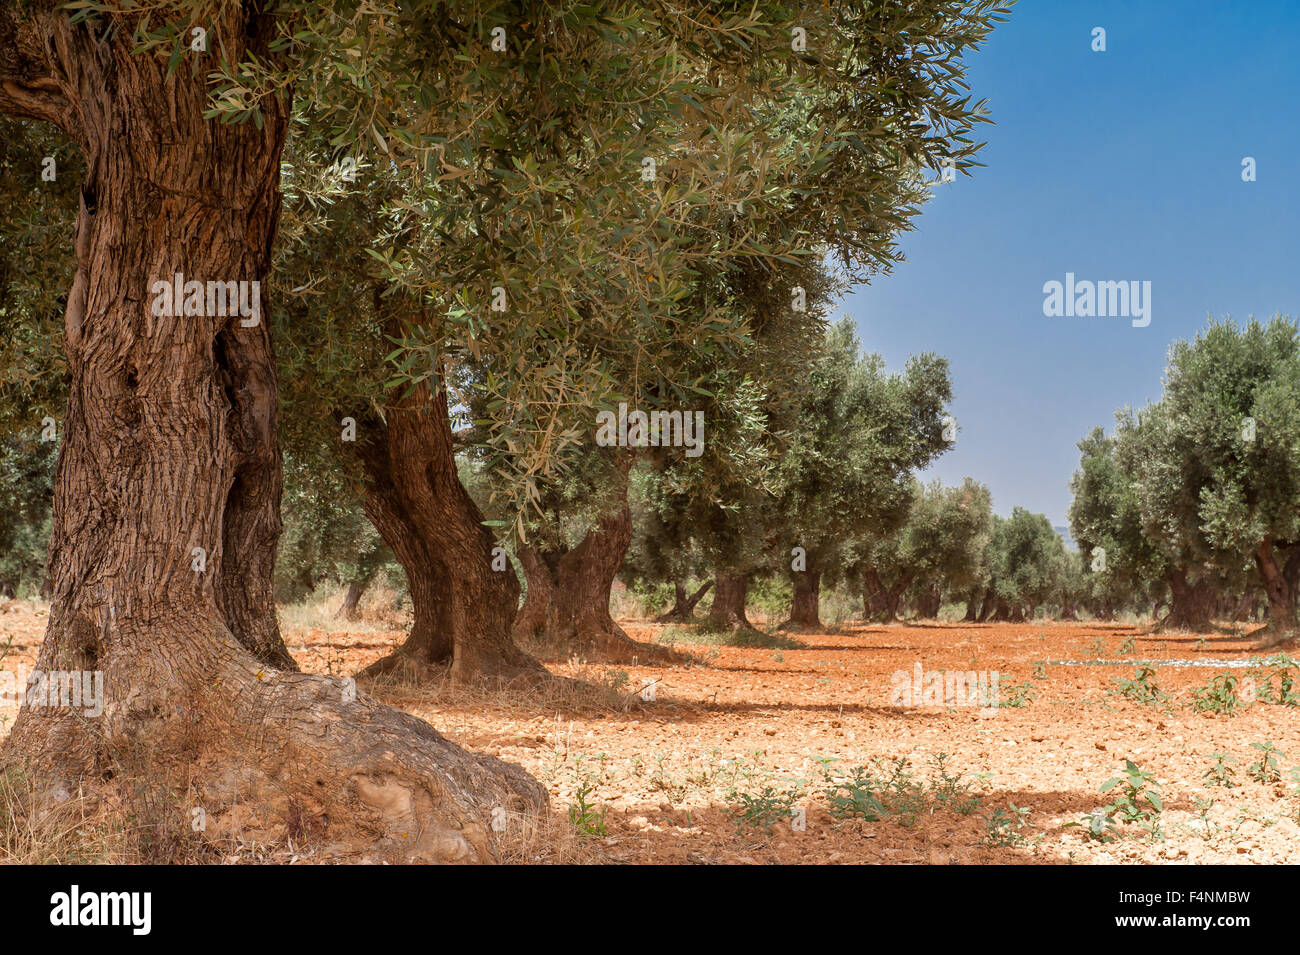 Les oliviers en terre rouge, province de Tarragone, Catalogne, Espagne Banque D'Images